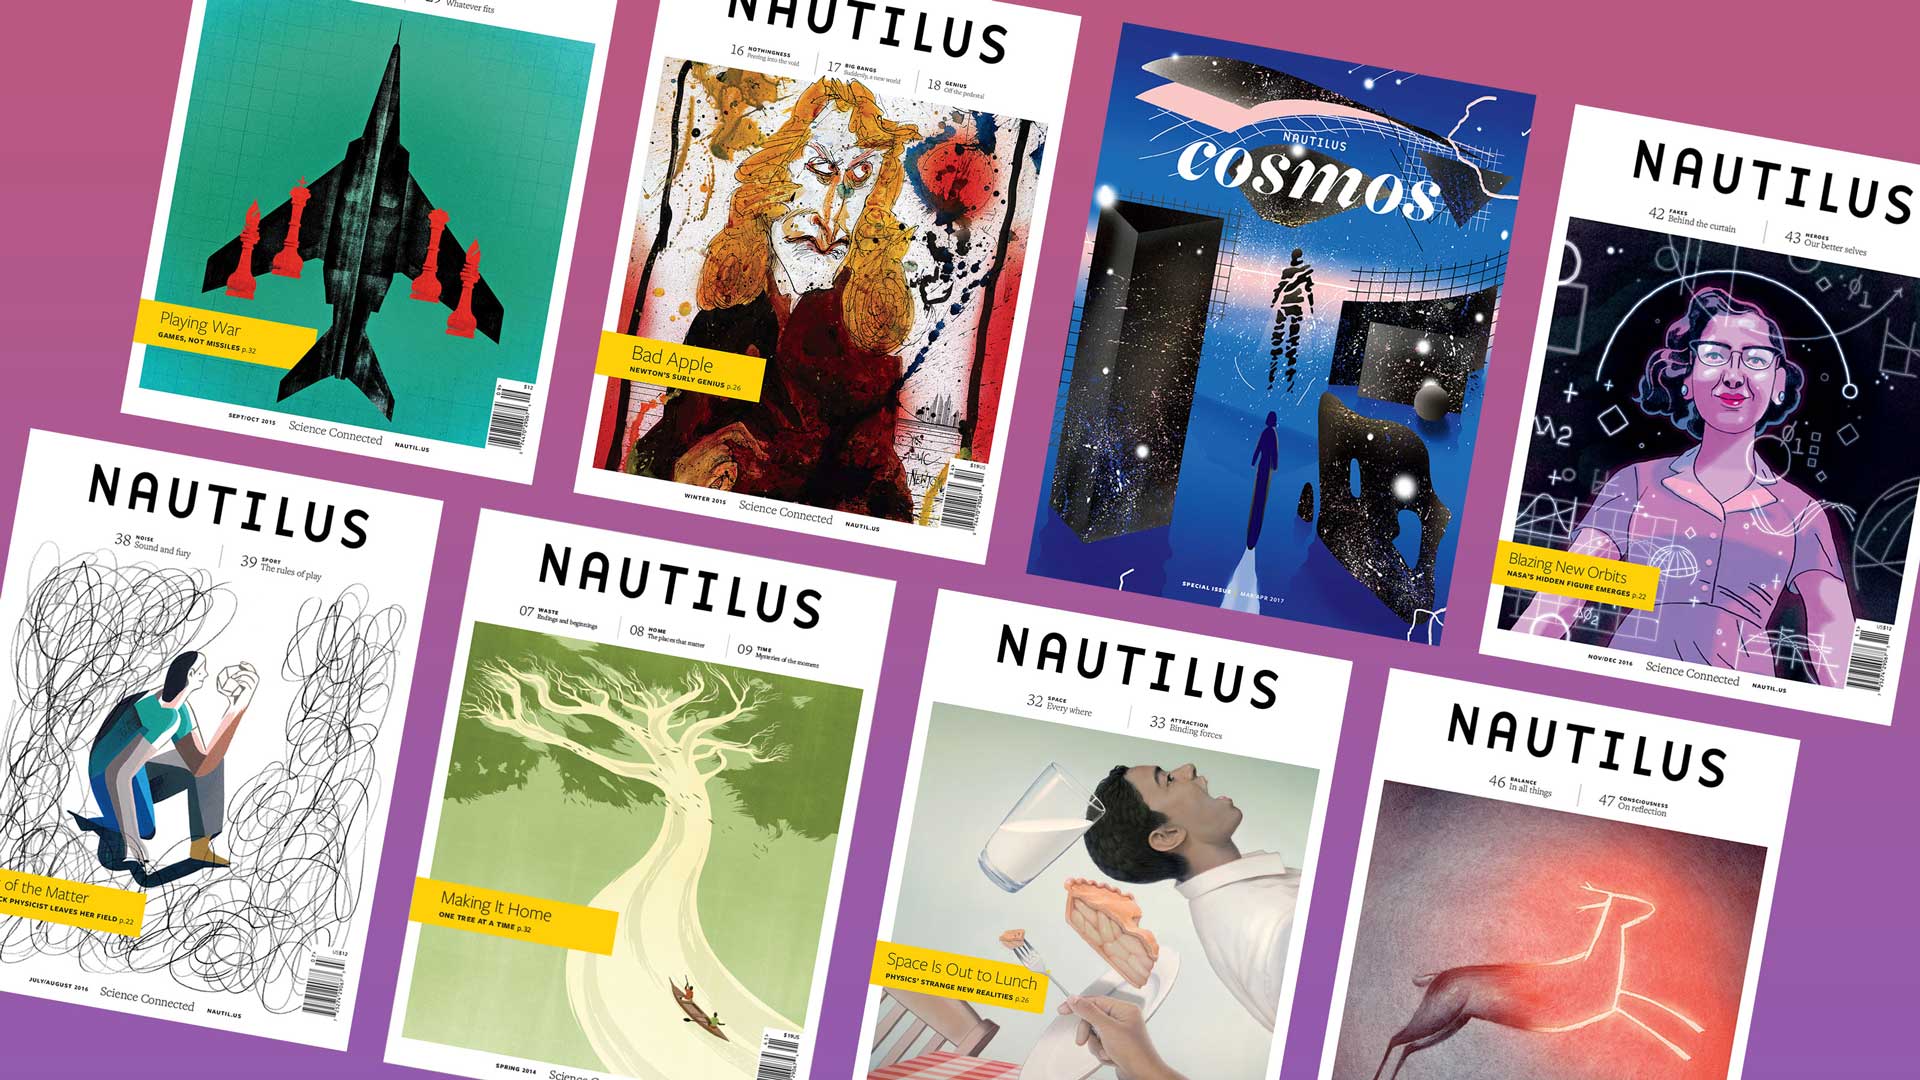 Nautilus magazine covers